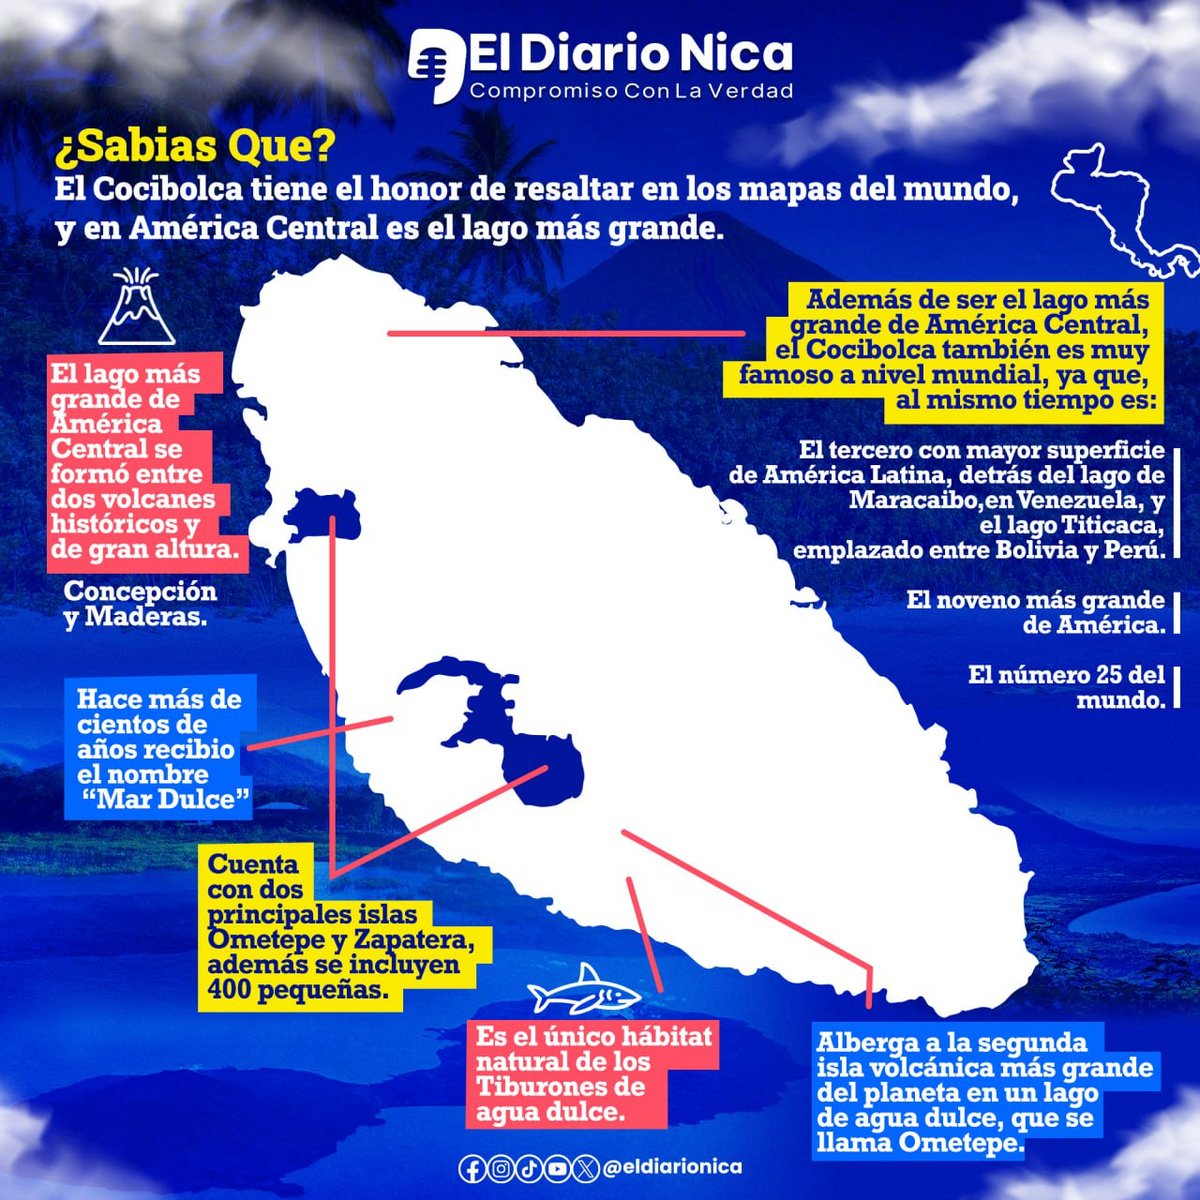 El Cocibolca tiene el honor de resaltar en los mapas del mundo y ser considerado el lago más grande de América Central, gracias a sus 8.264 kilómetros cuadrados de superficie.  #nicaragua #14mayo